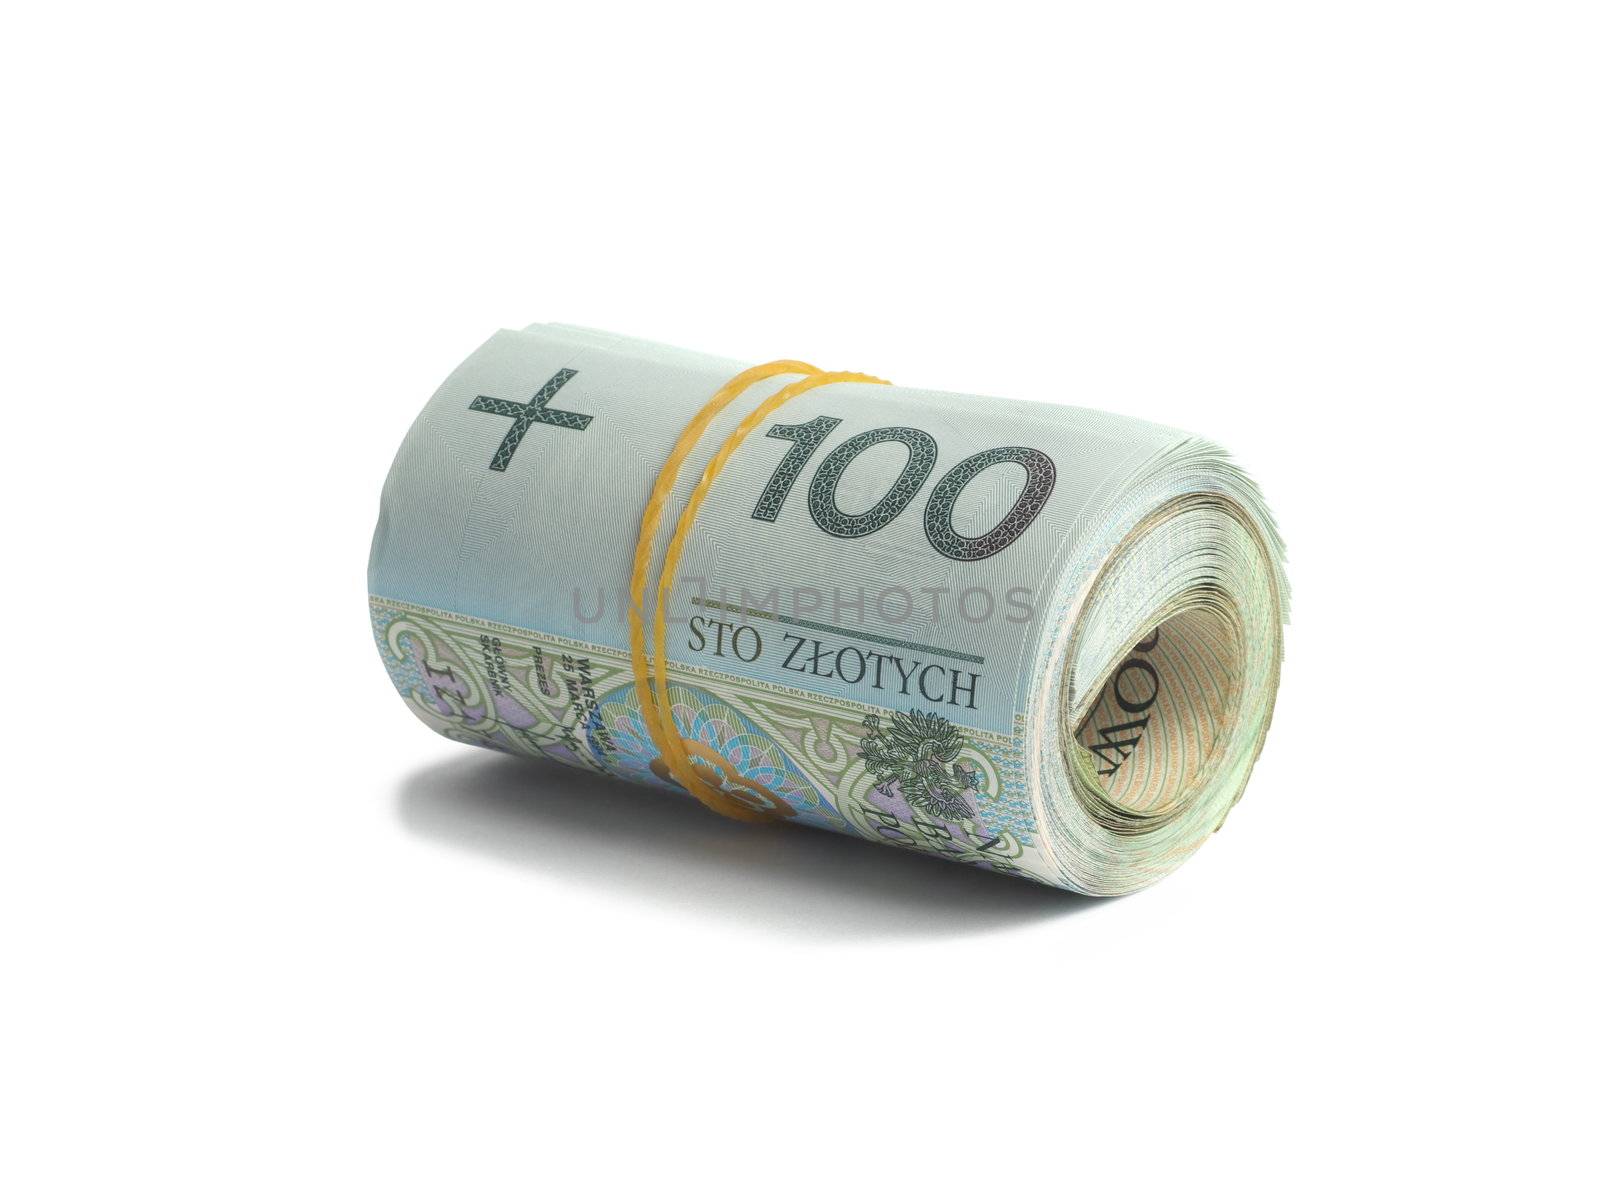 Macro of Polish bank notes on white background